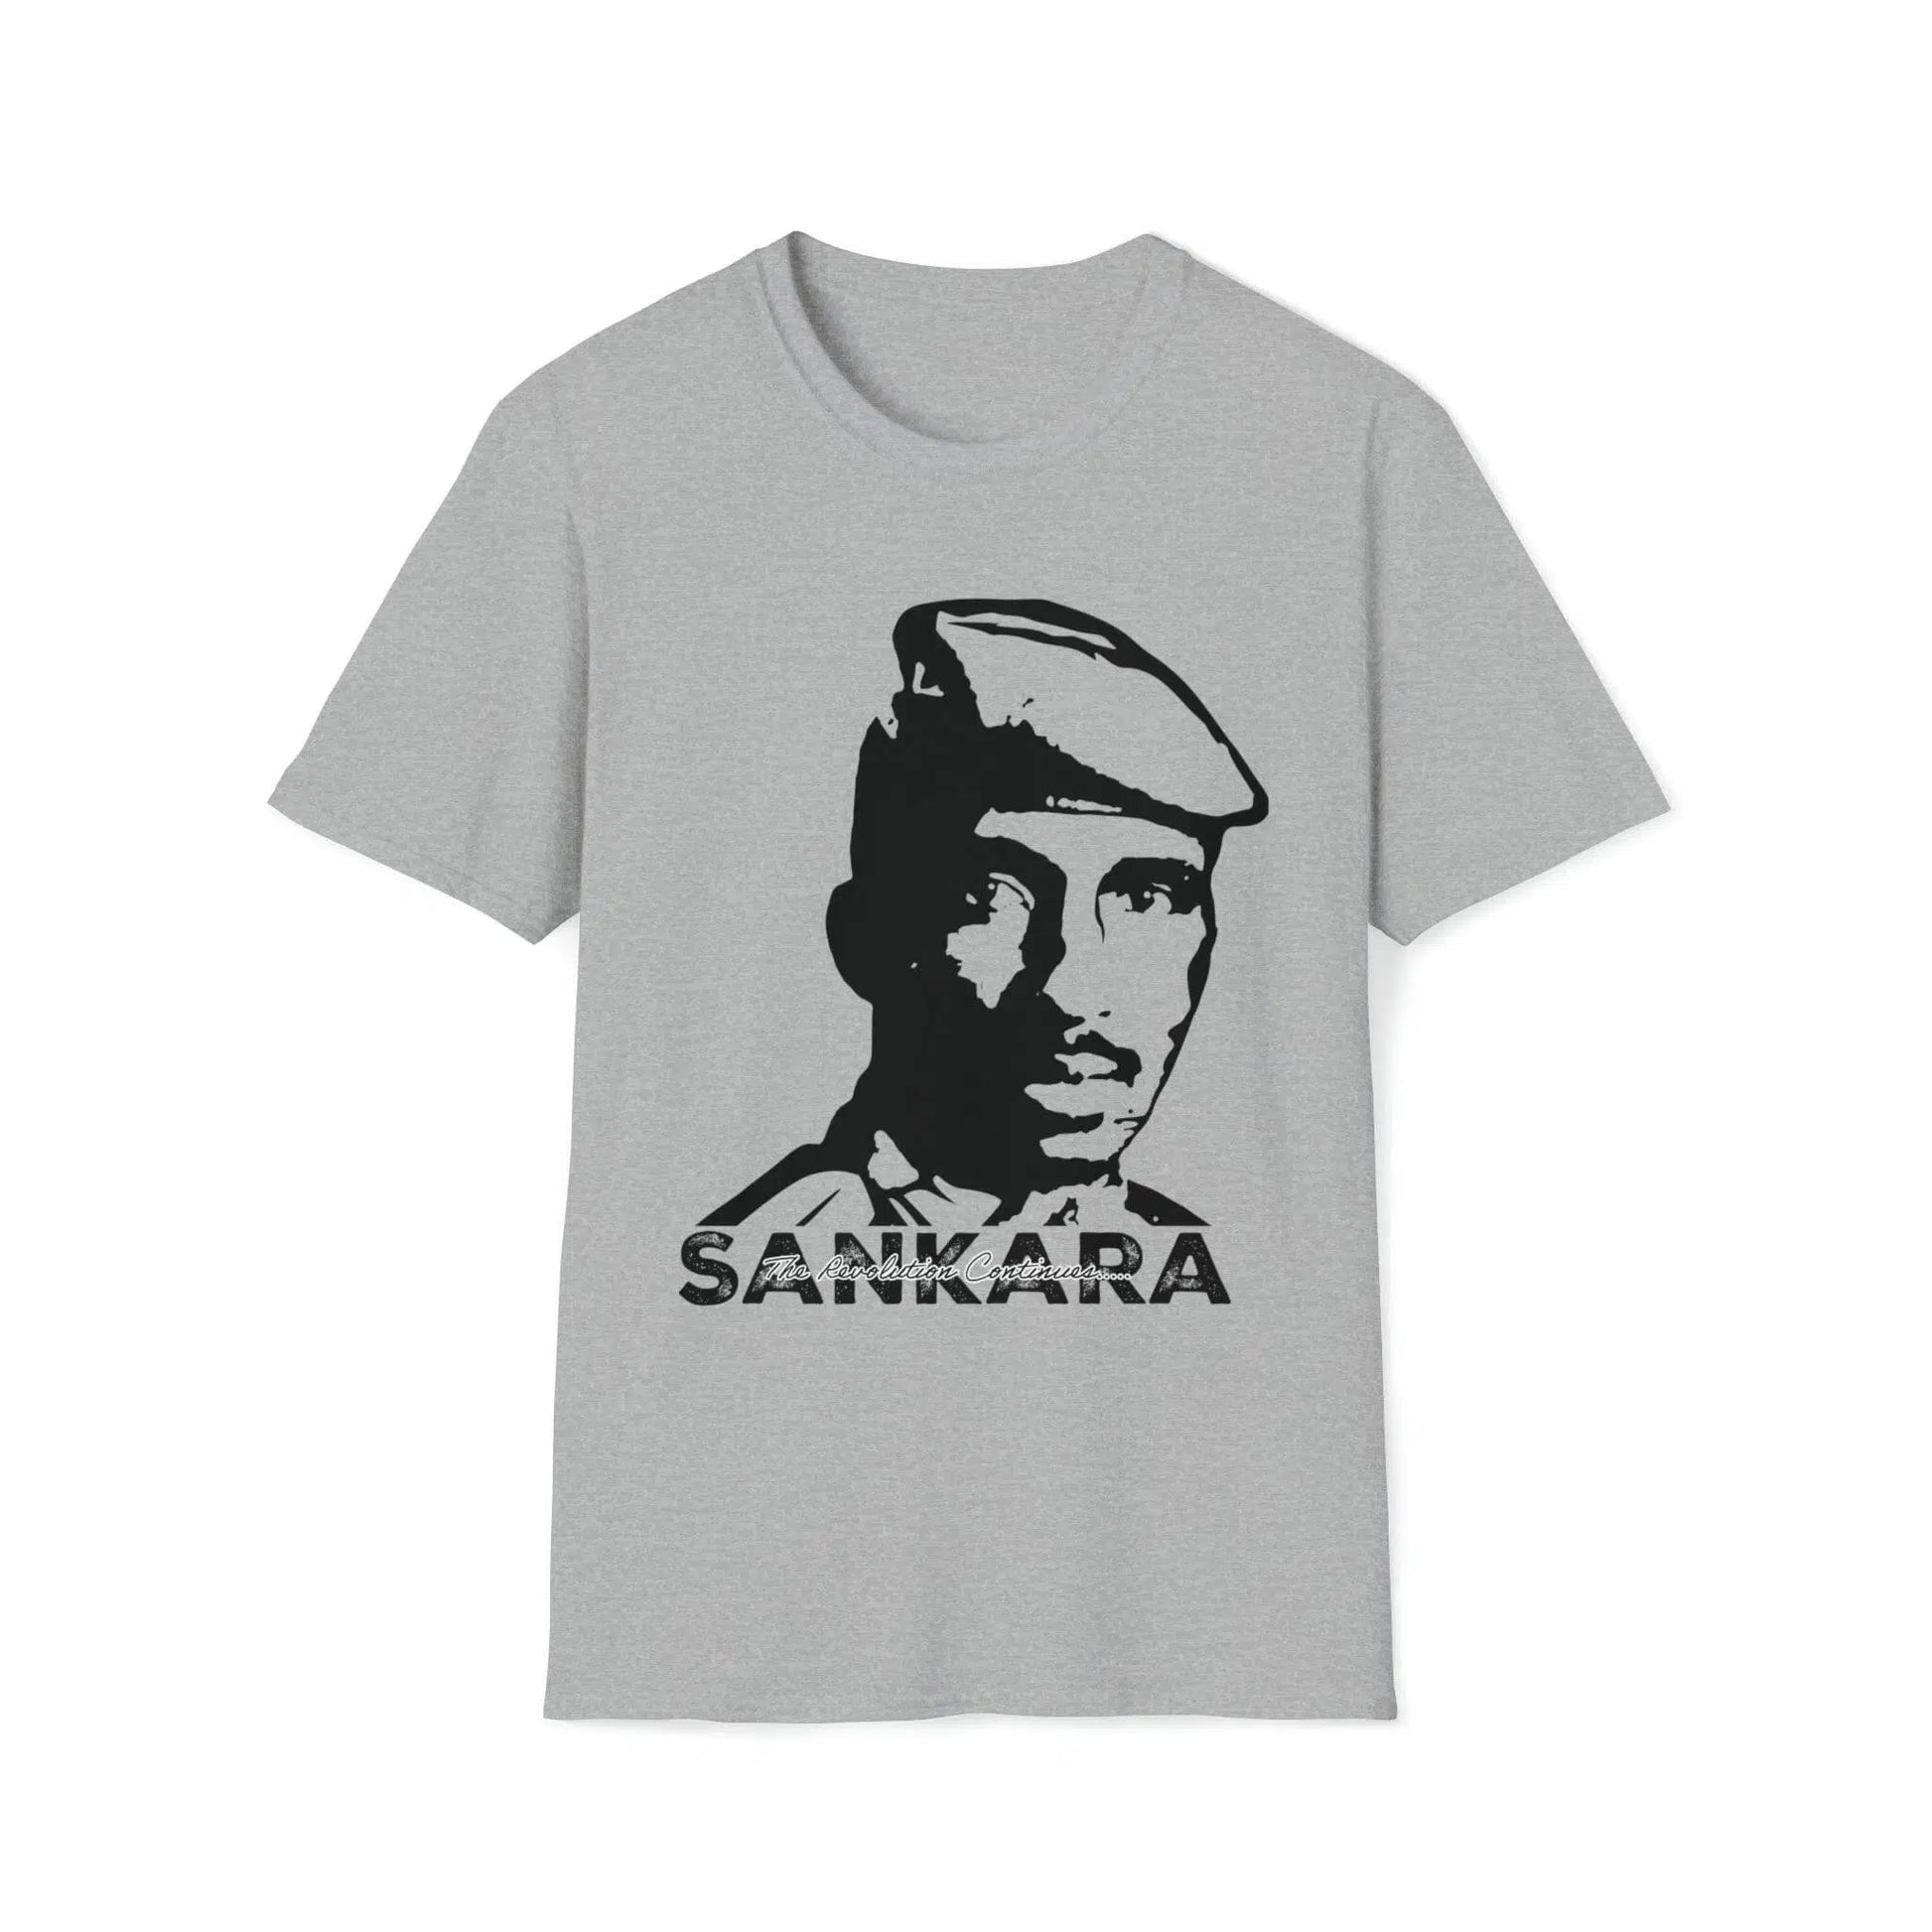 Thomas Sankara T shirt: Black history Pan African Icon